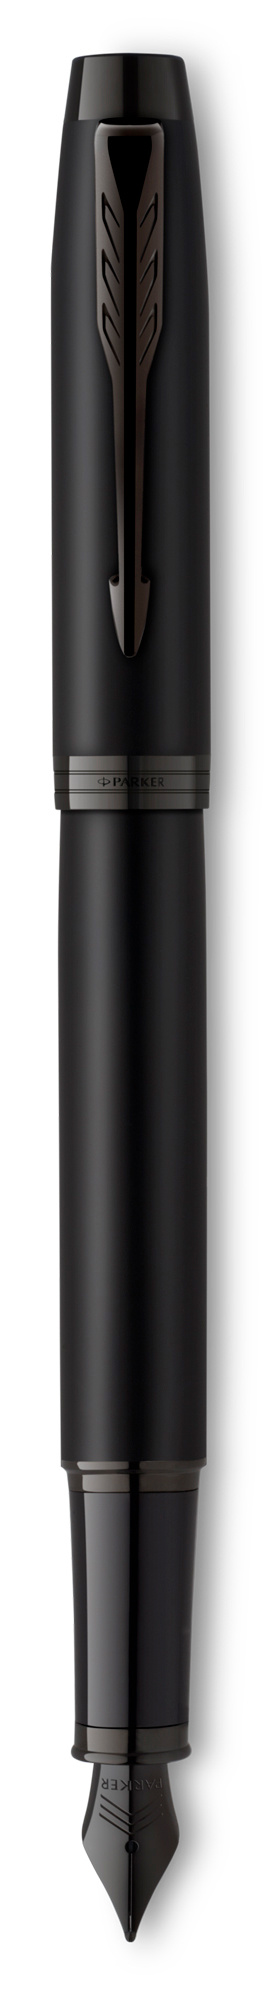 Ручка перьевая Parker IM Achromatic F317, ювелирная латунь, колпачок, подарочная упаковка (CW2127741)